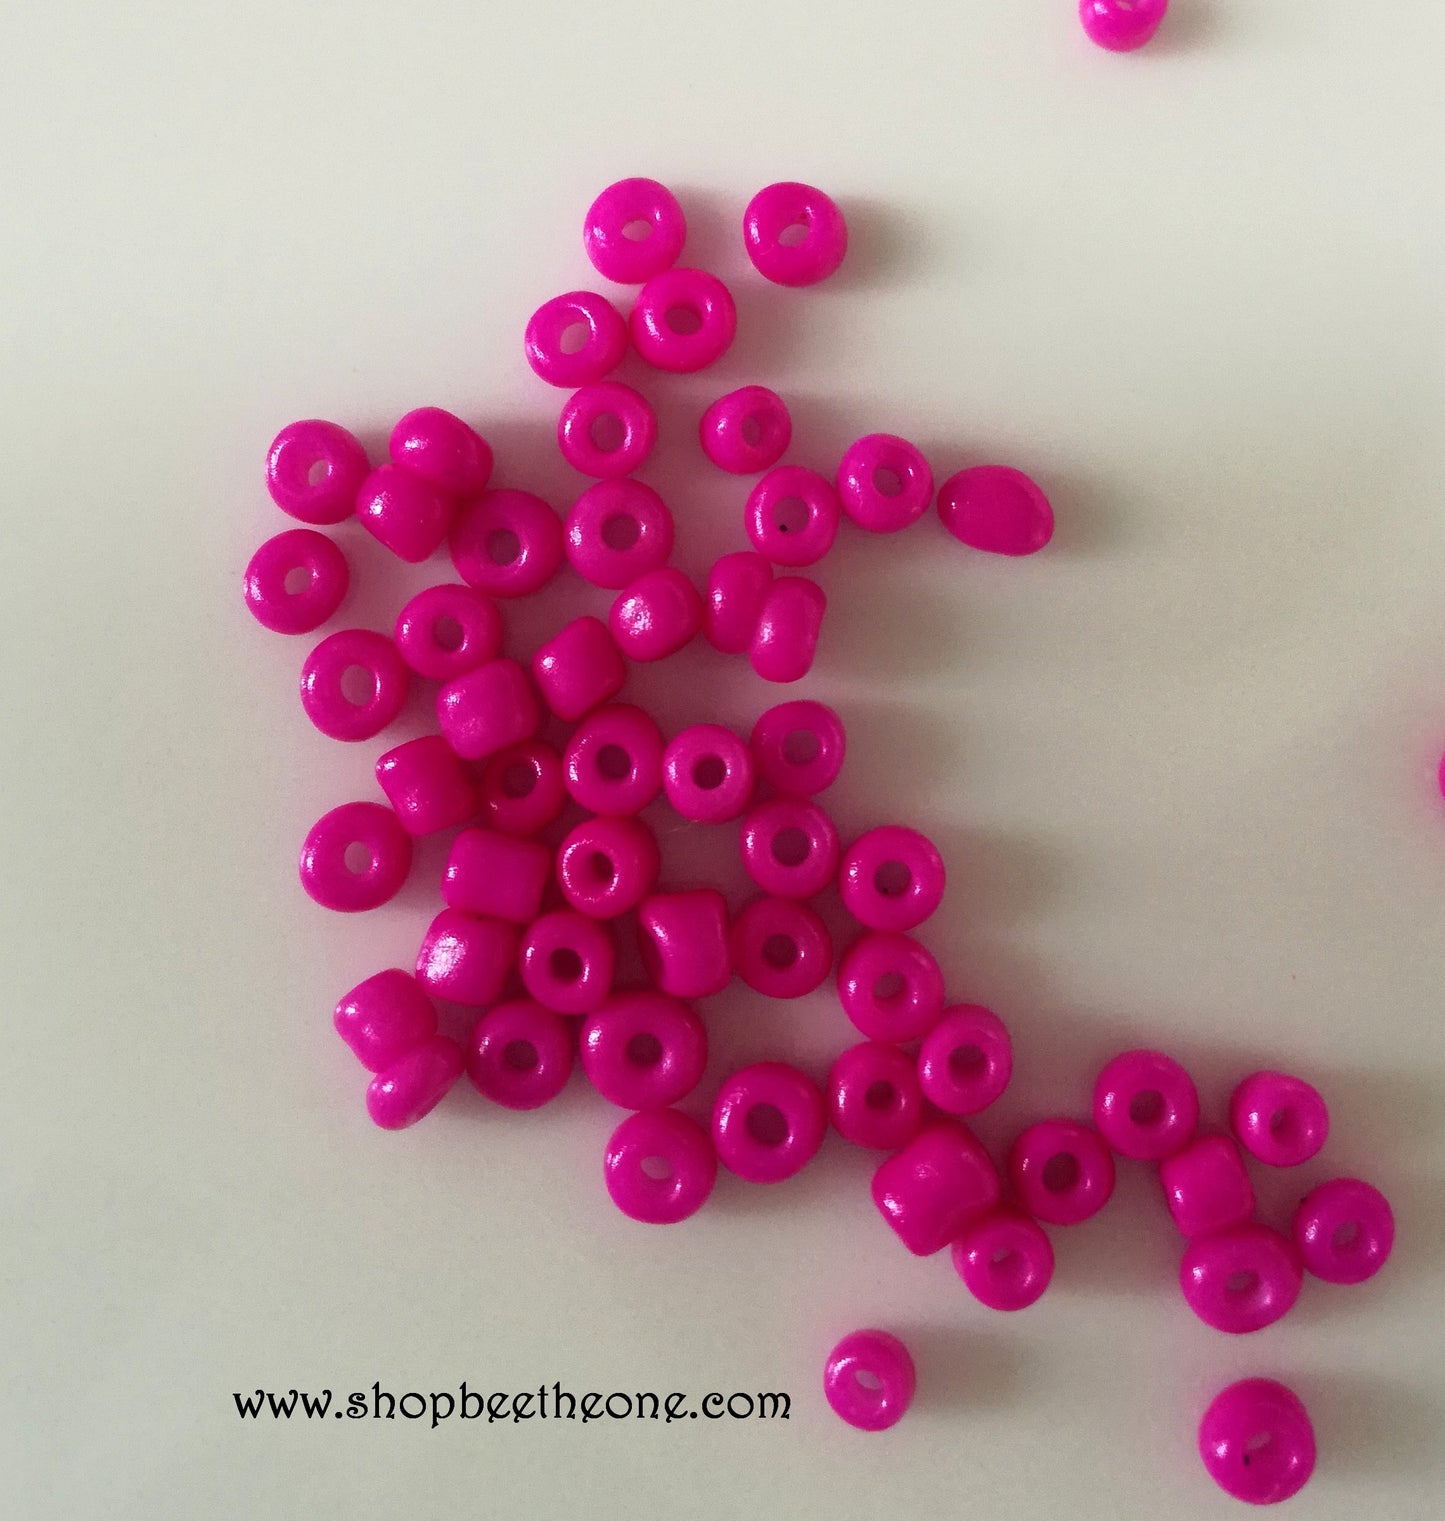 Lot de 1 g de Perles de rocaille opaques intercalaire graine en verre couleurs vives - 3 mm - 2 coloris